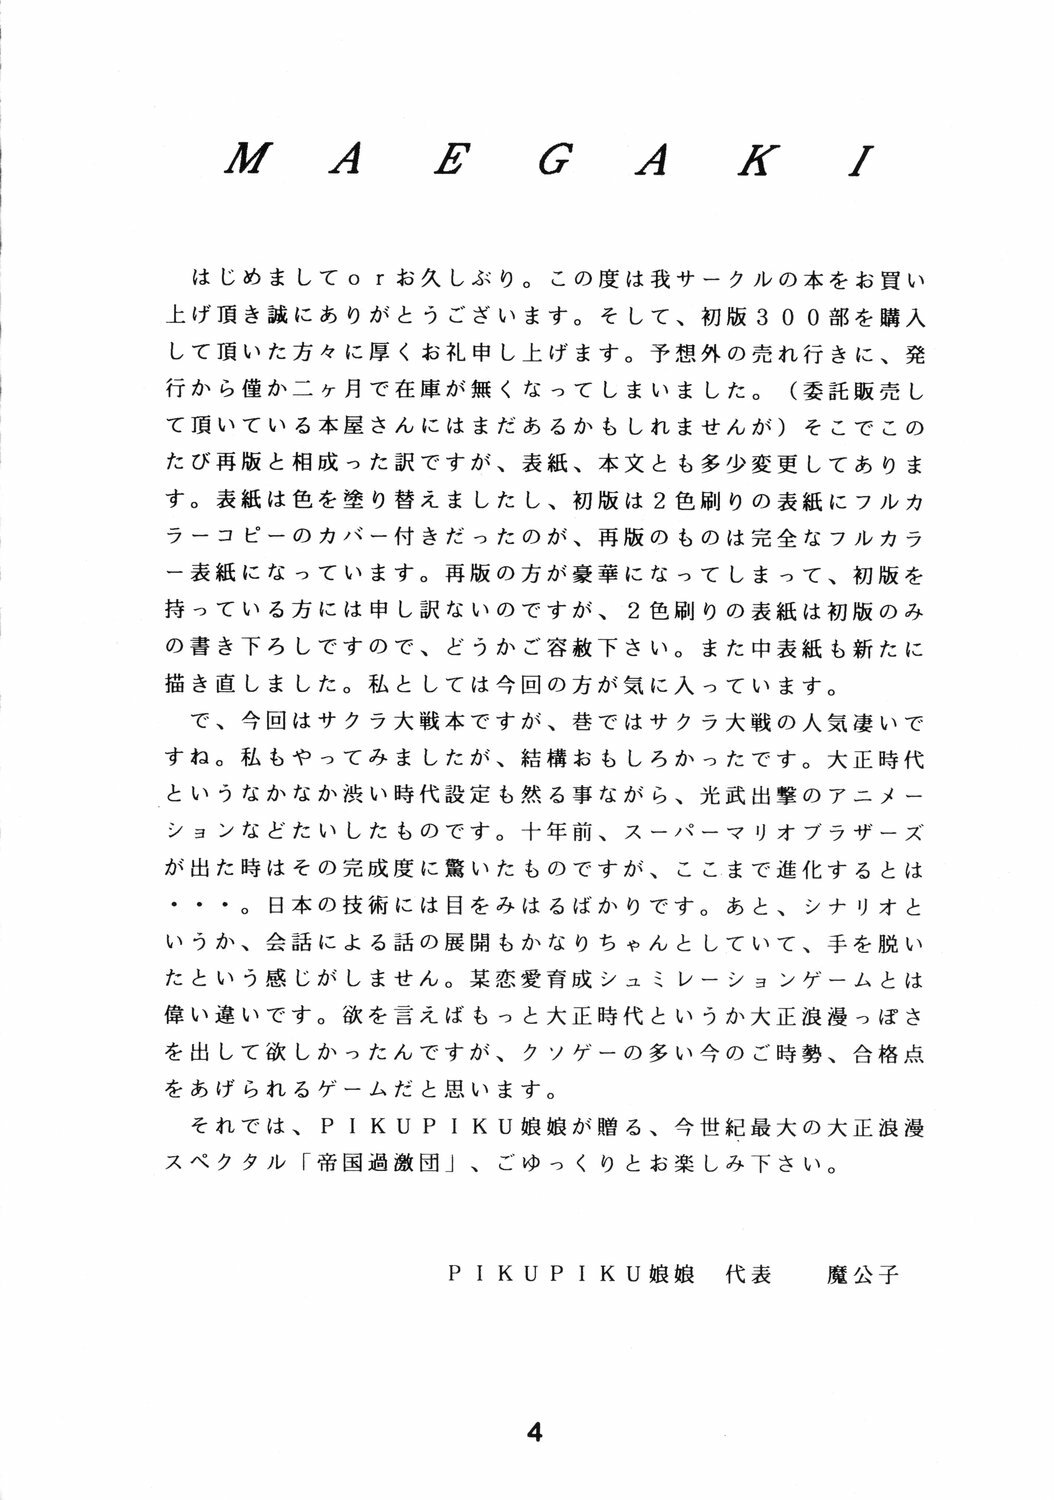 [PIKUPIKU Nyan Nyan (Makoushi)] Teikoku Kageki Dan (Sakura Taisen) page 3 full